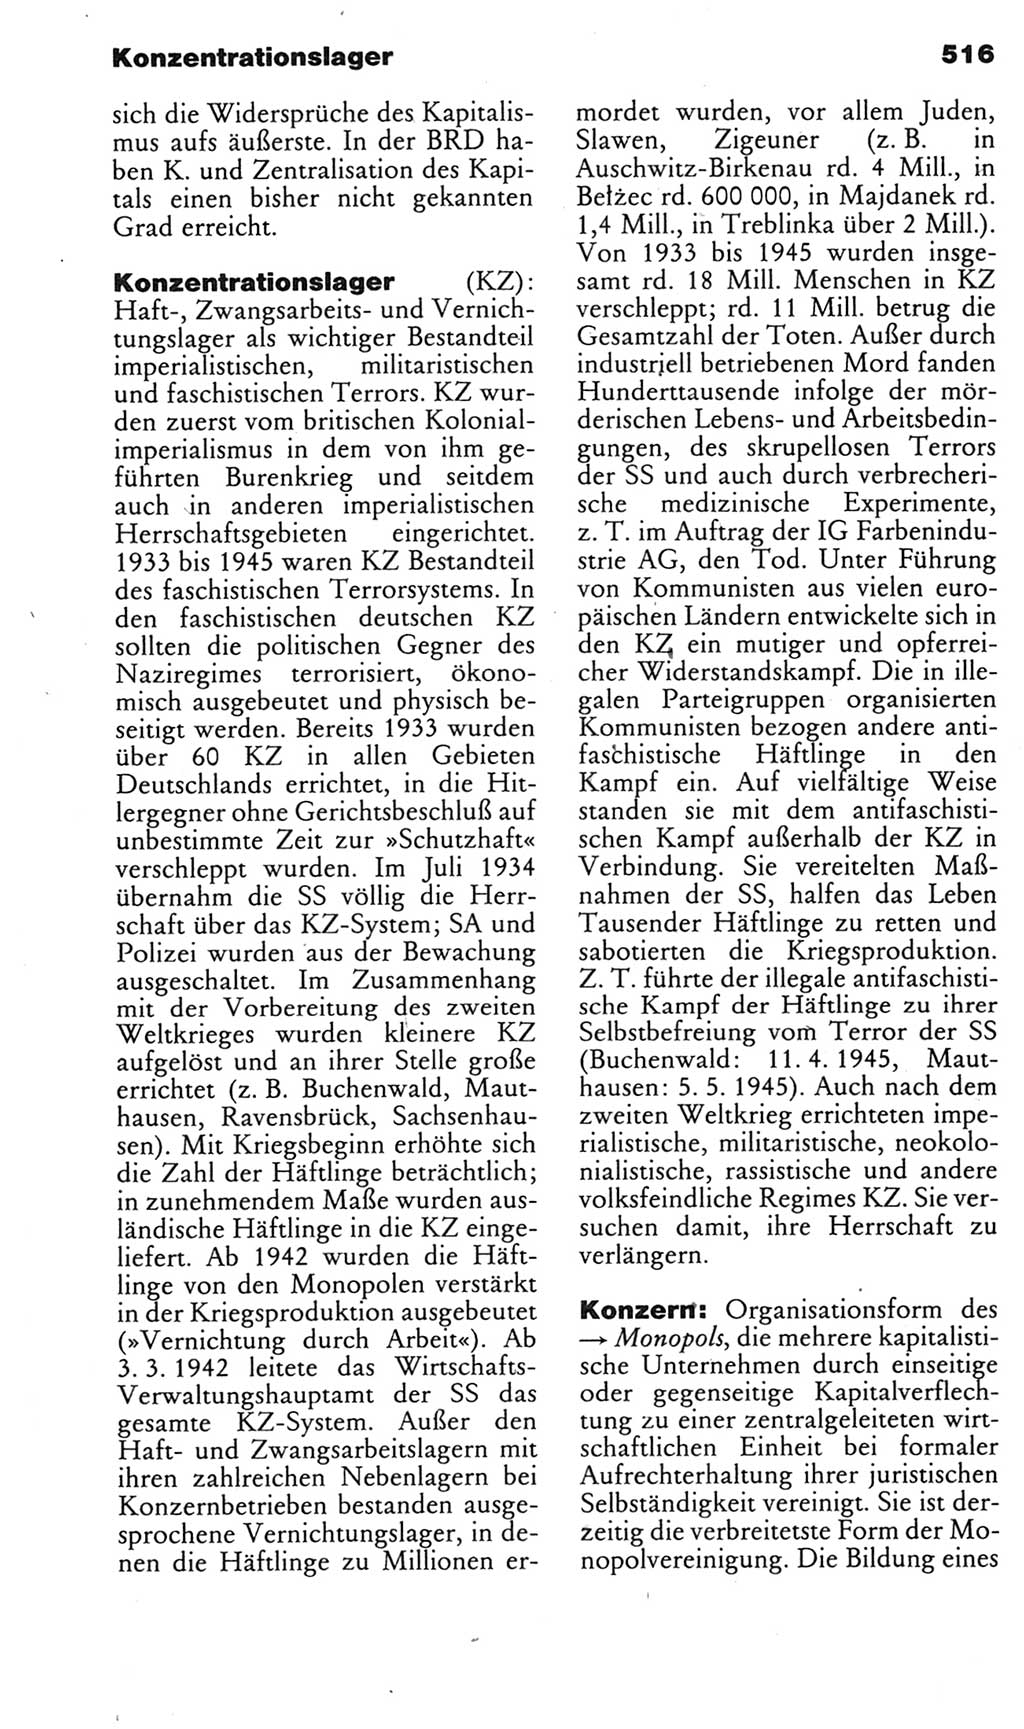 Kleines politisches Wörterbuch [Deutsche Demokratische Republik (DDR)] 1985, Seite 516 (Kl. pol. Wb. DDR 1985, S. 516)